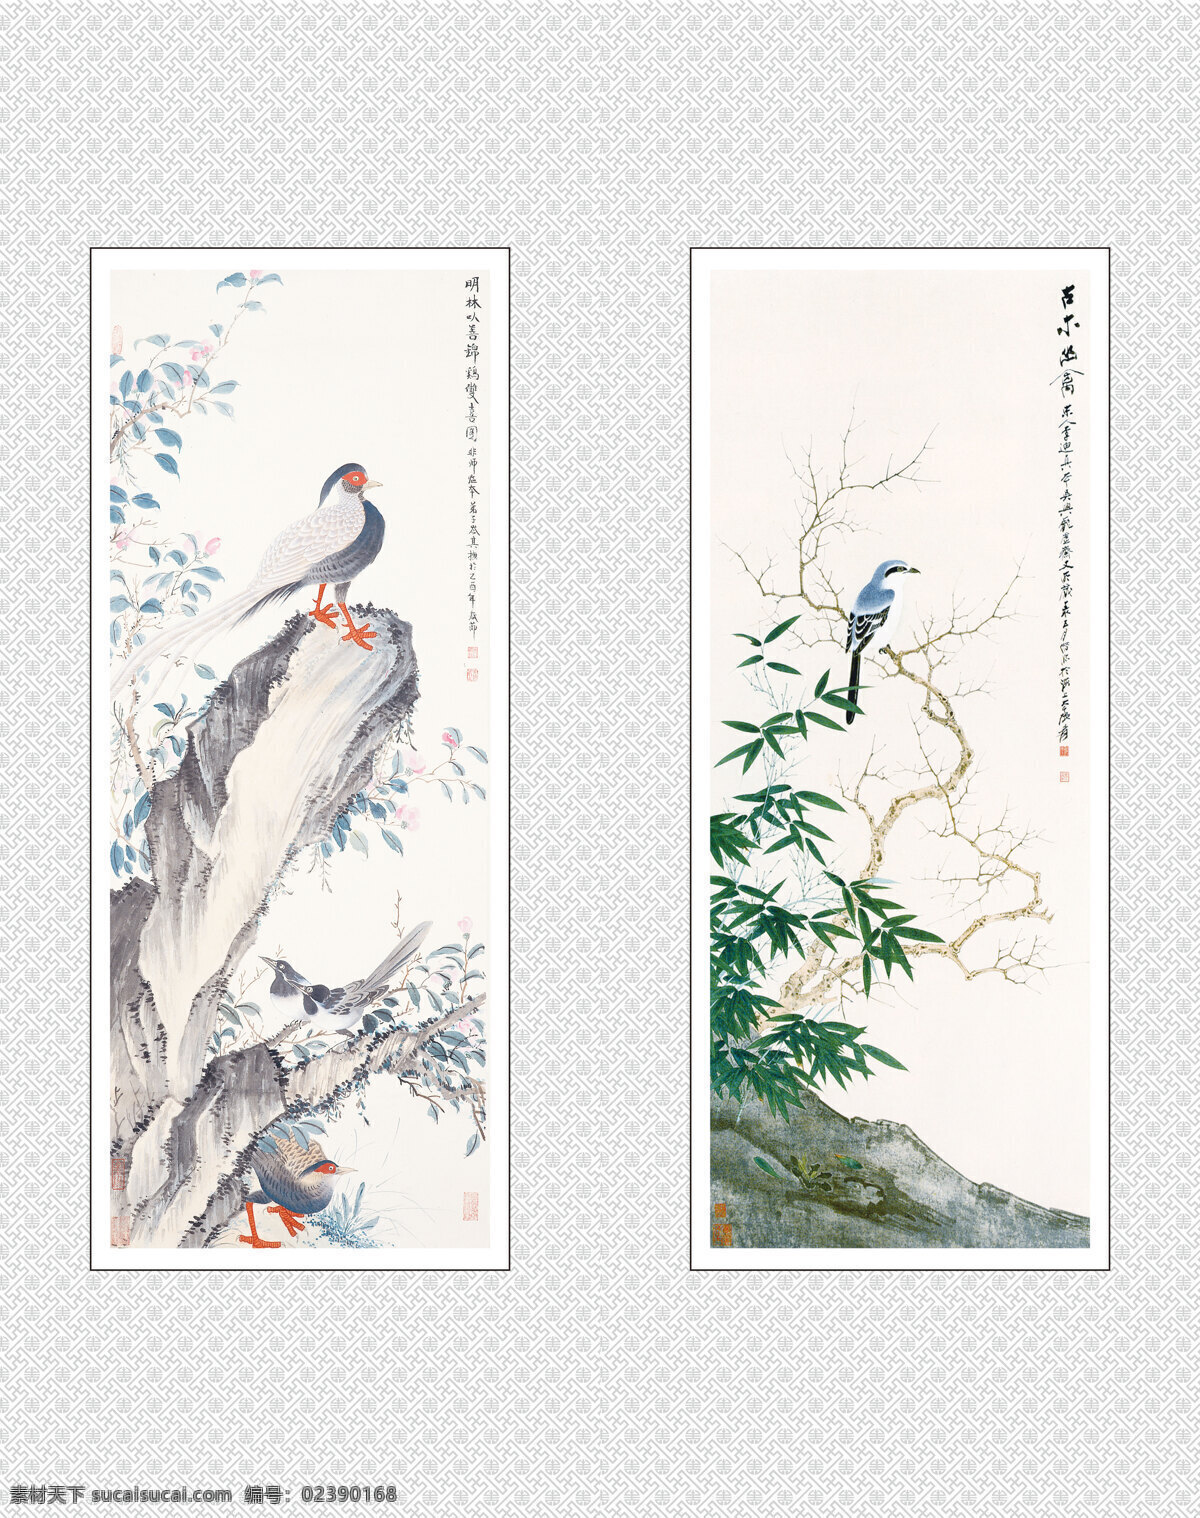 中国画 中国元素 绘画元素 书法 艺术 花鸟画 水墨画 中国风 淡彩画 移门图 绘画书法 文化艺术